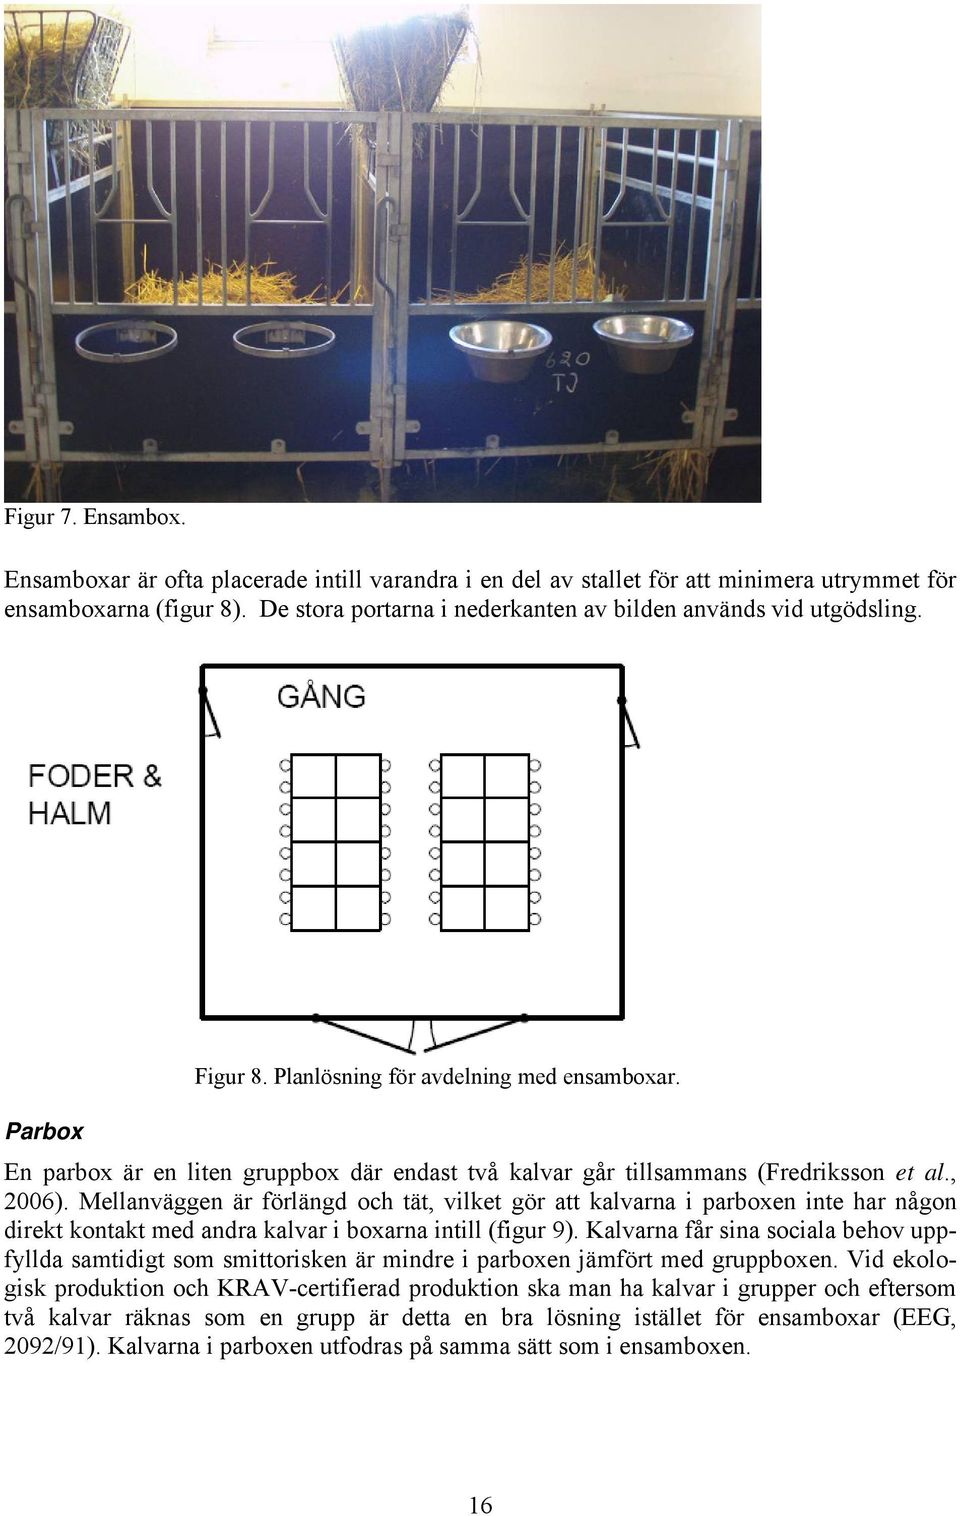 En parbox är en liten gruppbox där endast två kalvar går tillsammans (Fredriksson et al., 2006).